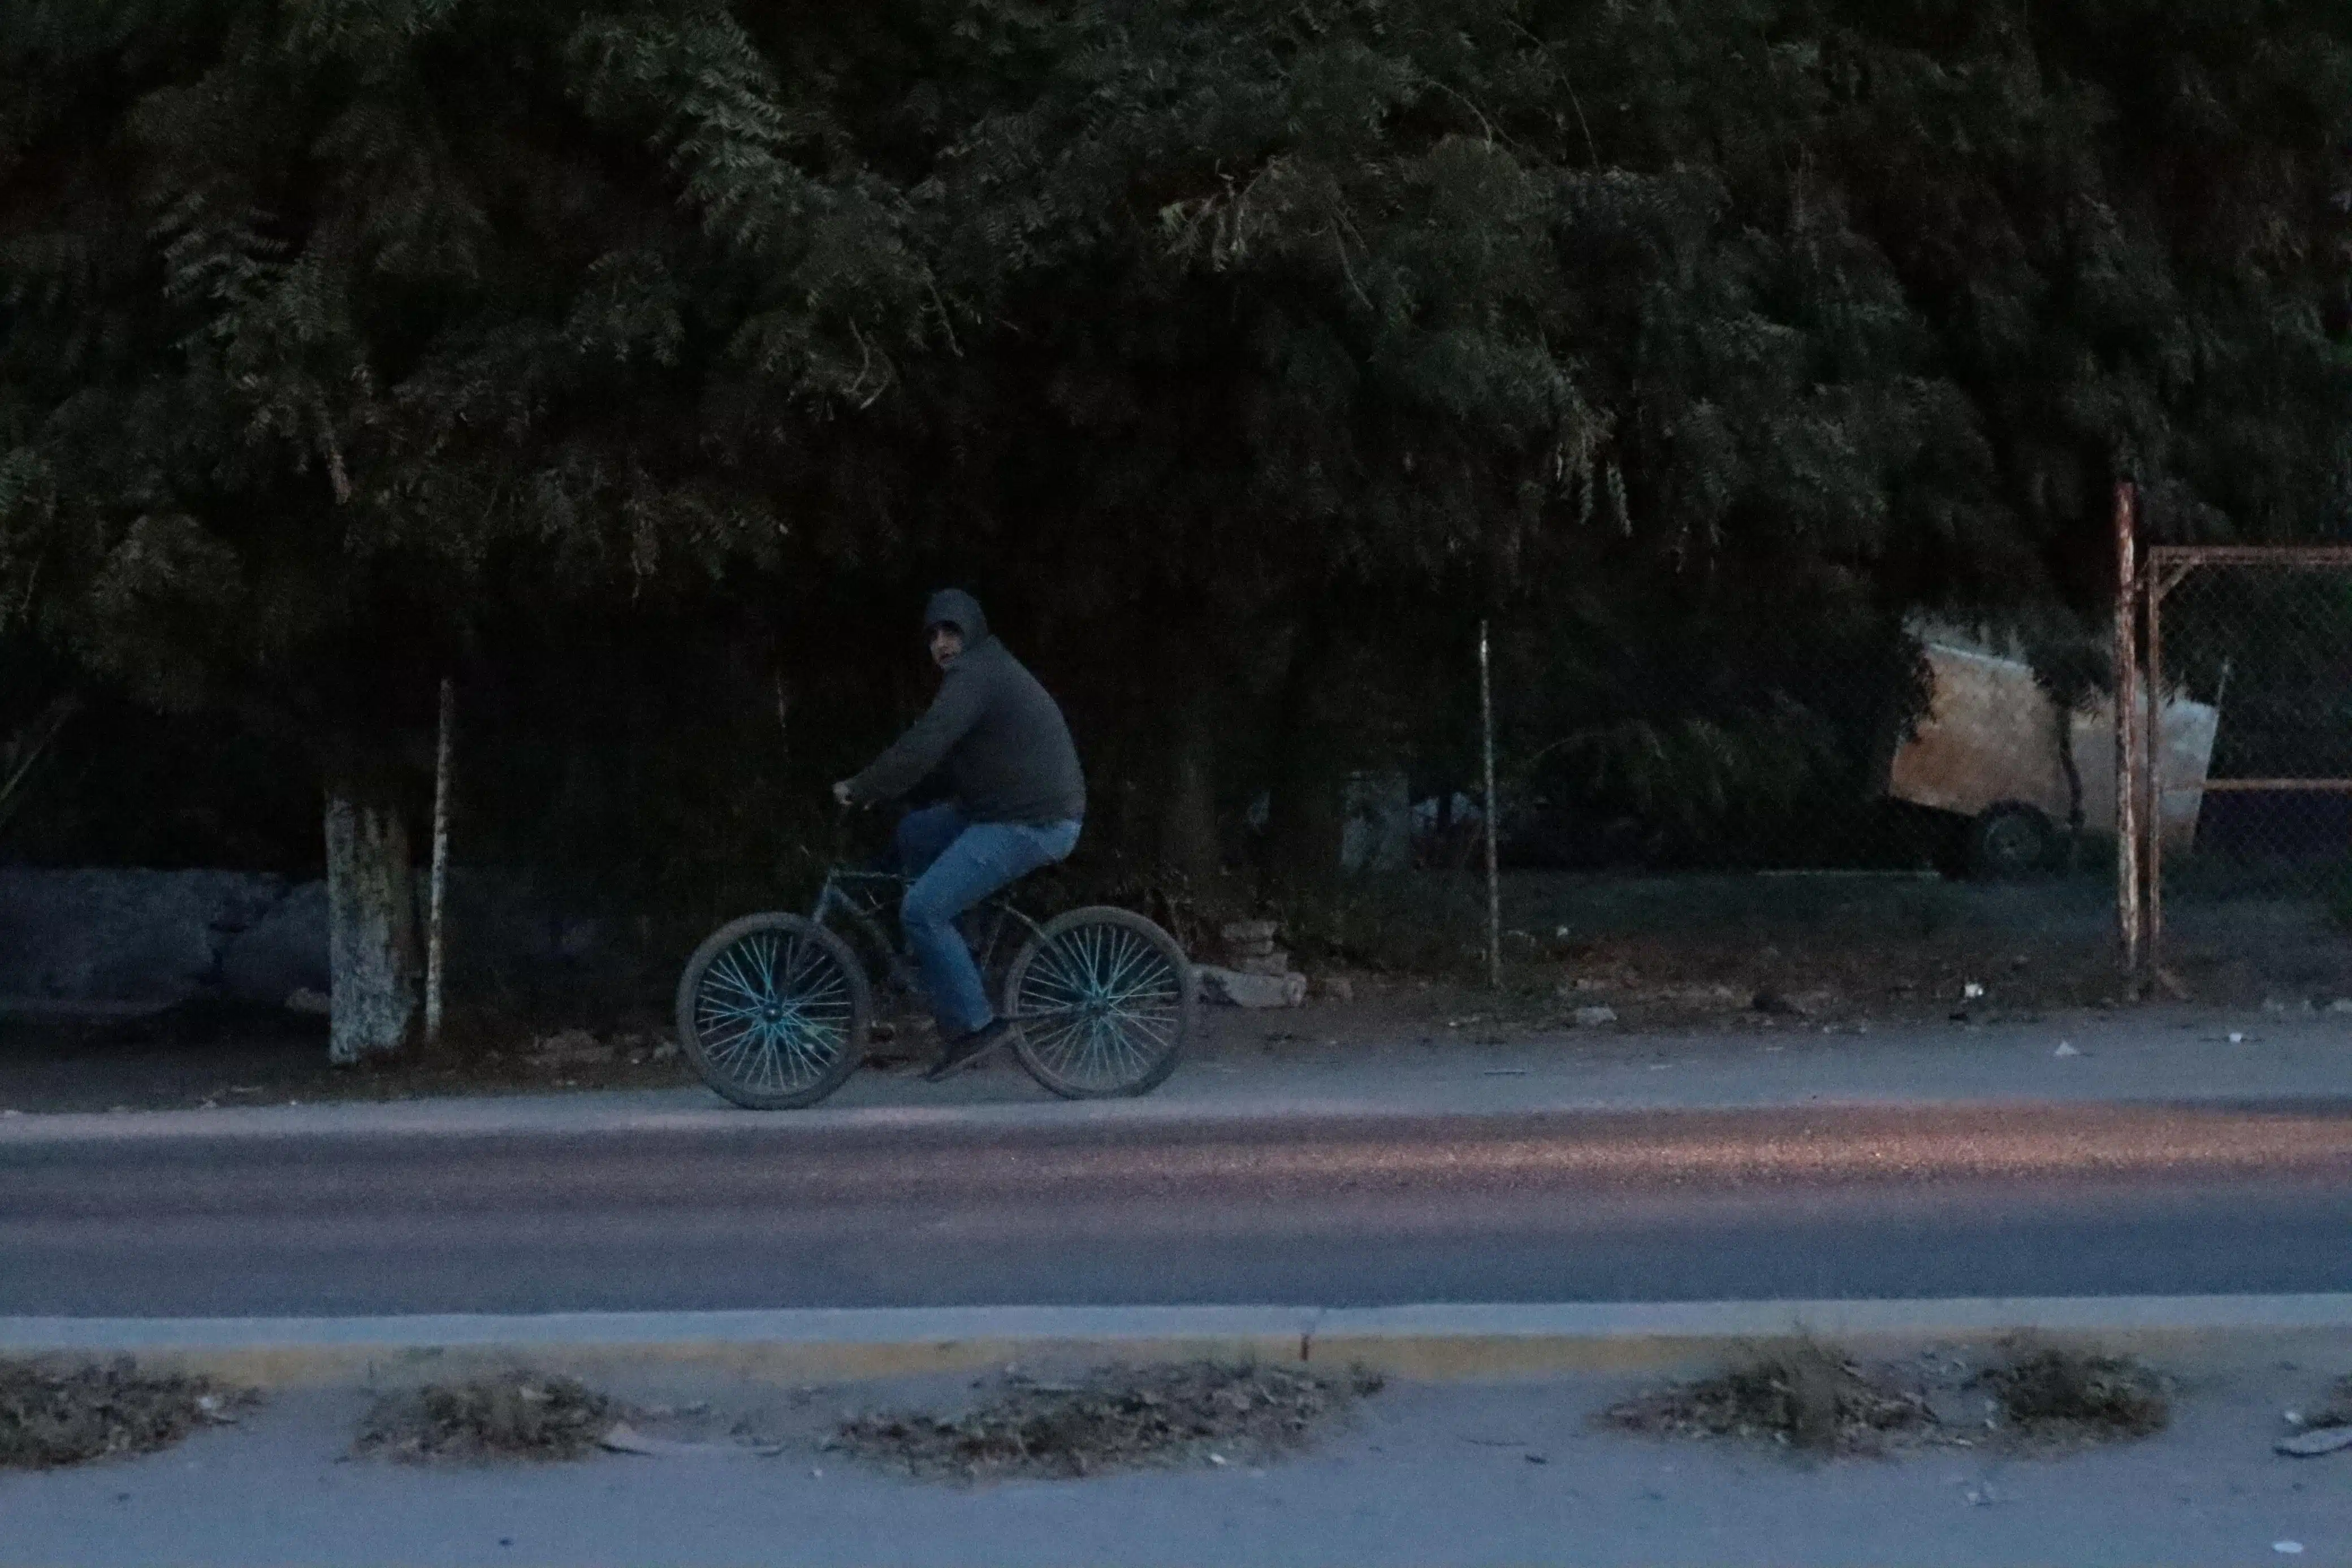 Una persona en bicicleta bien abrigada por el intenso frío en Sinaloa